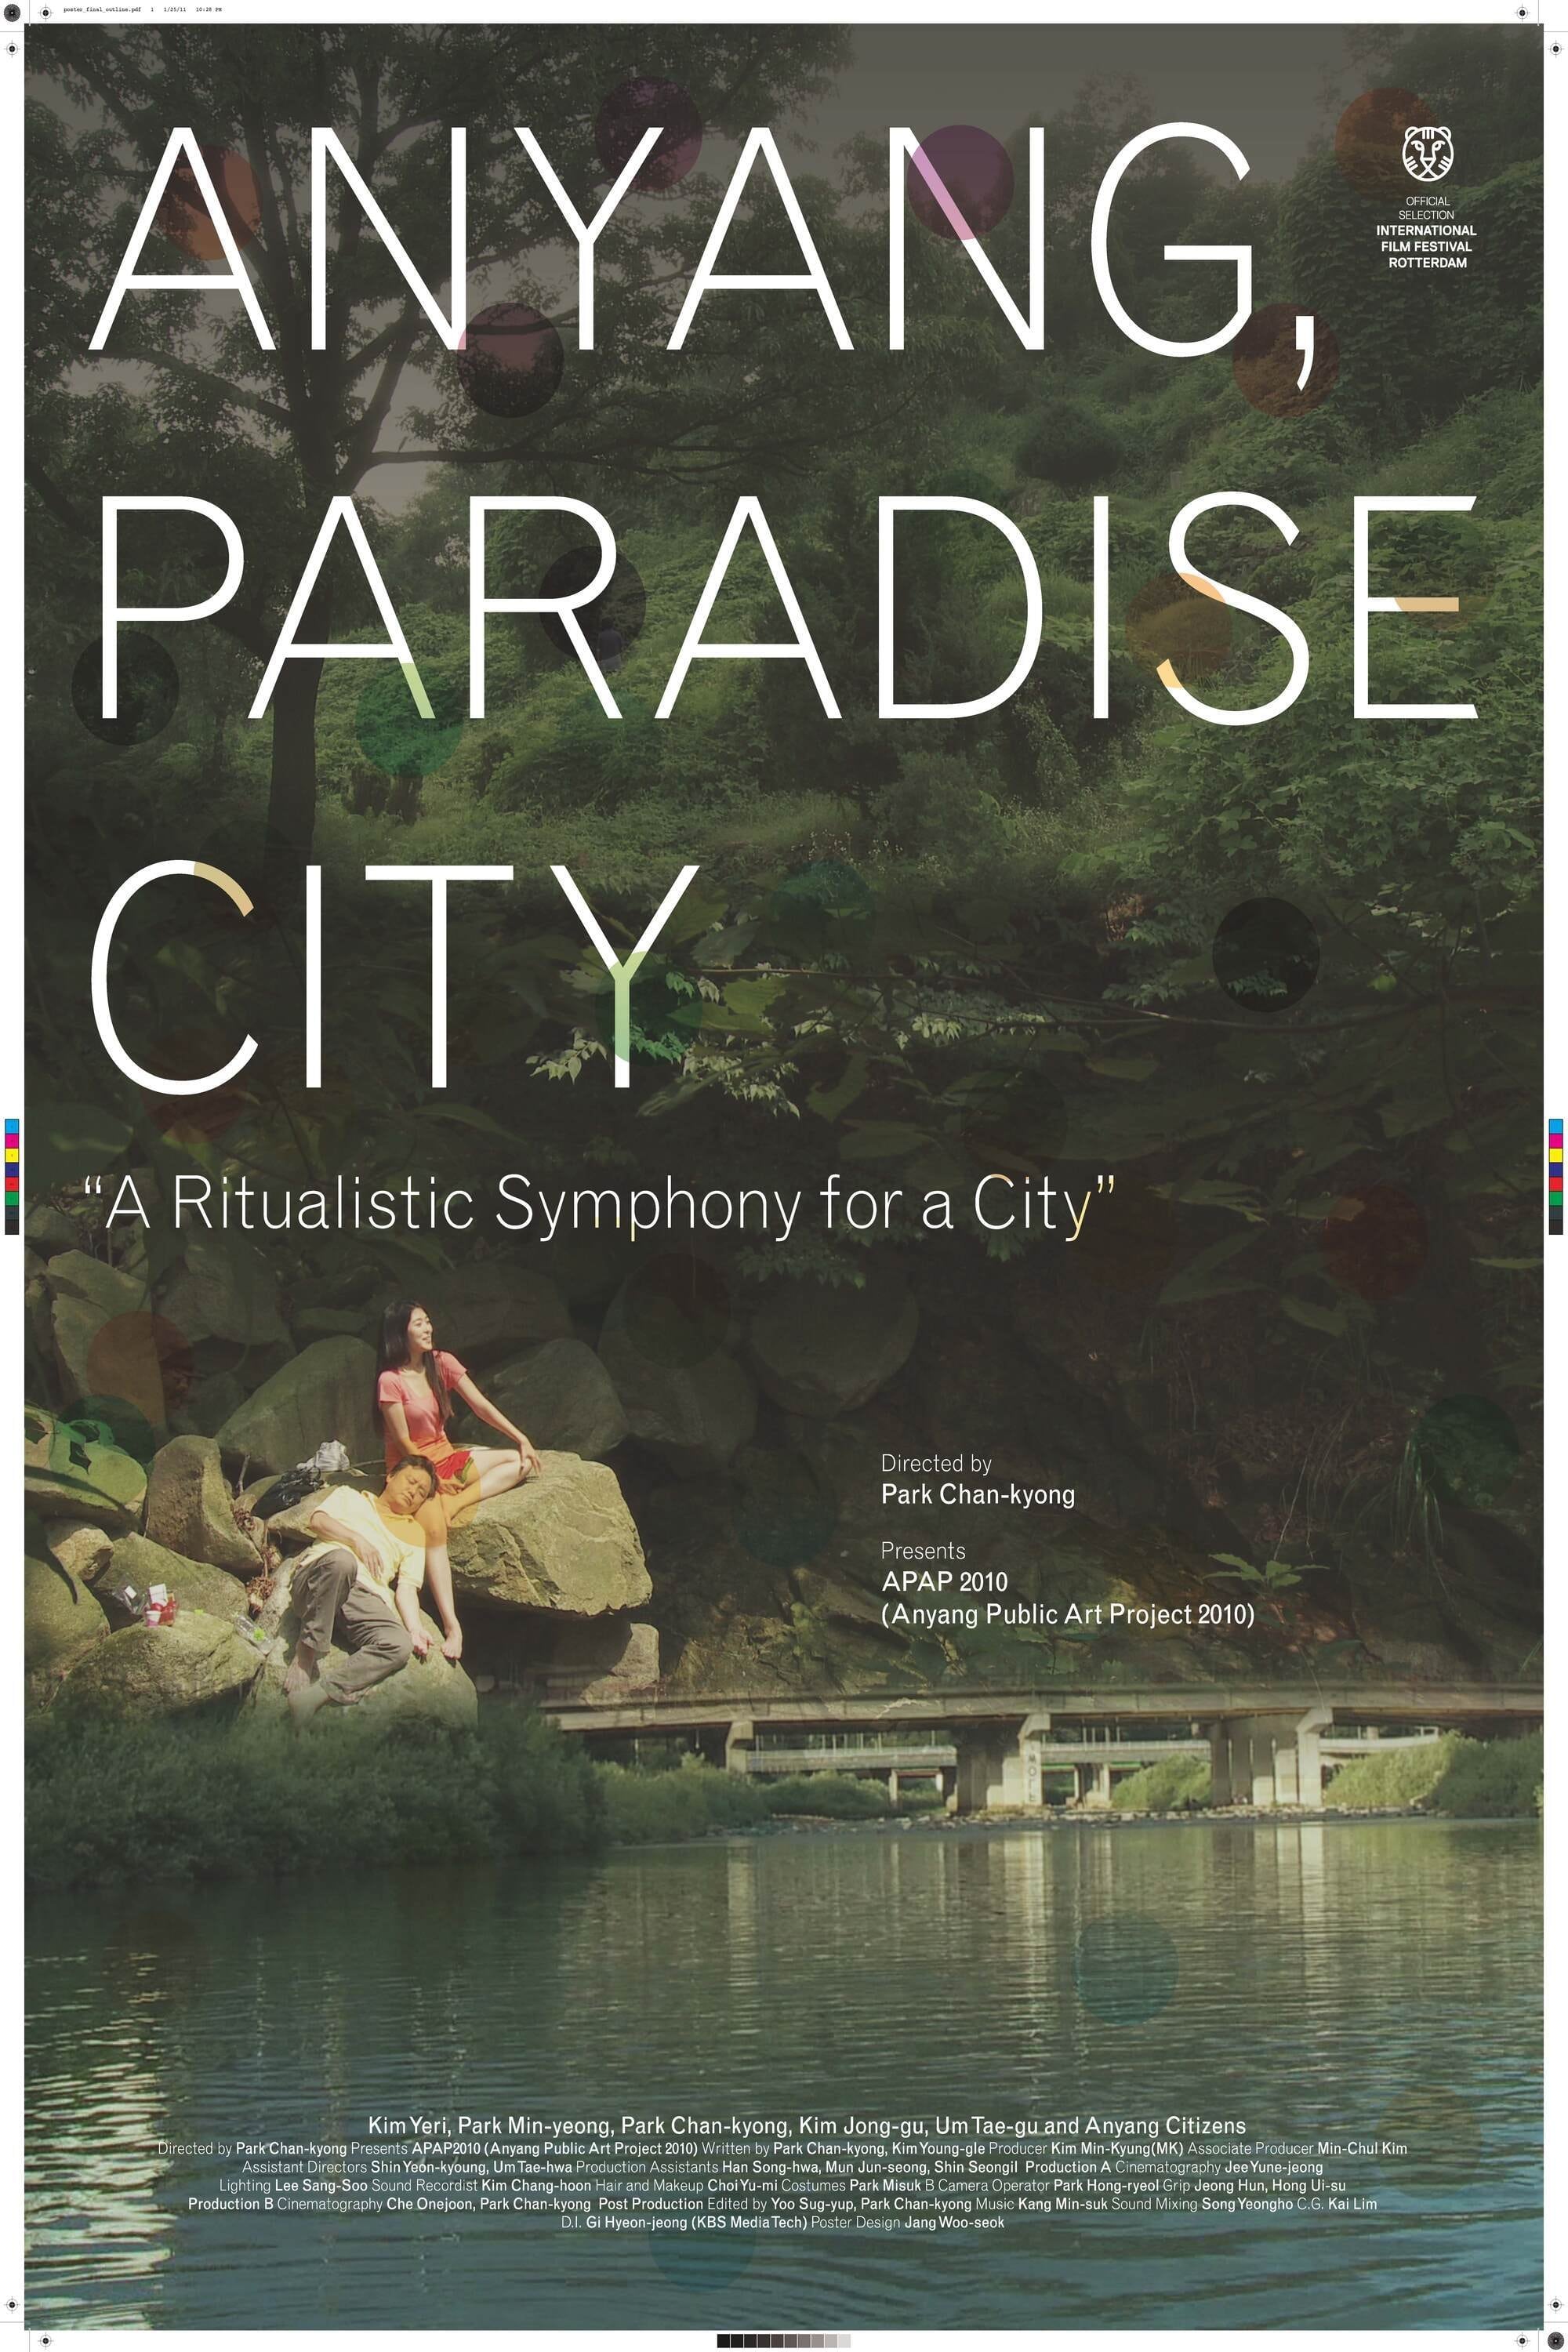 Anyang, Paradise City (2010)